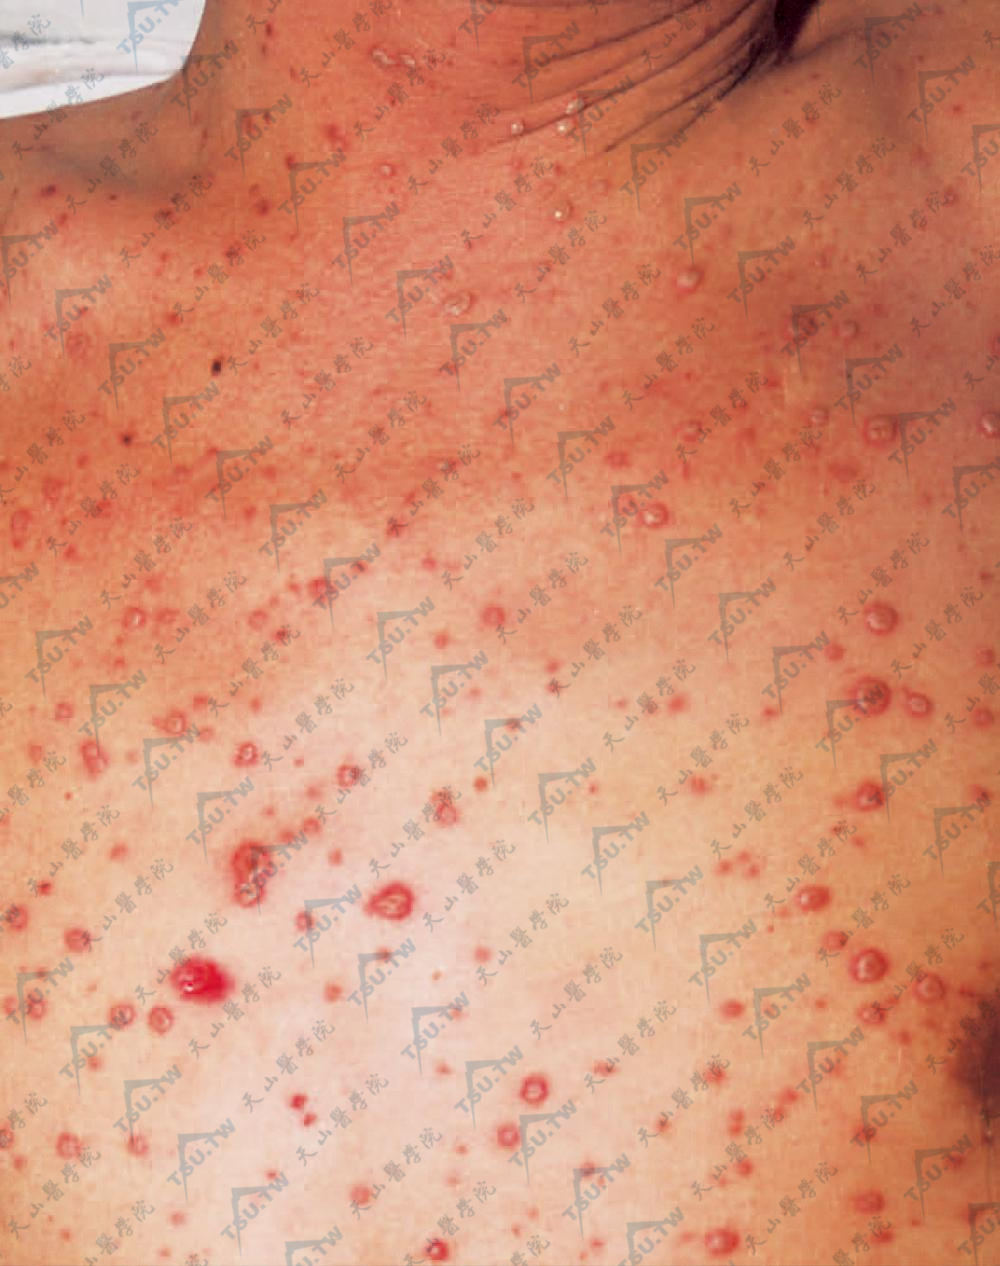 播散性带状疱疹。除群集水疱外，全身泛发绿豆大小水疱，周围有红晕，类似水痘样发疹